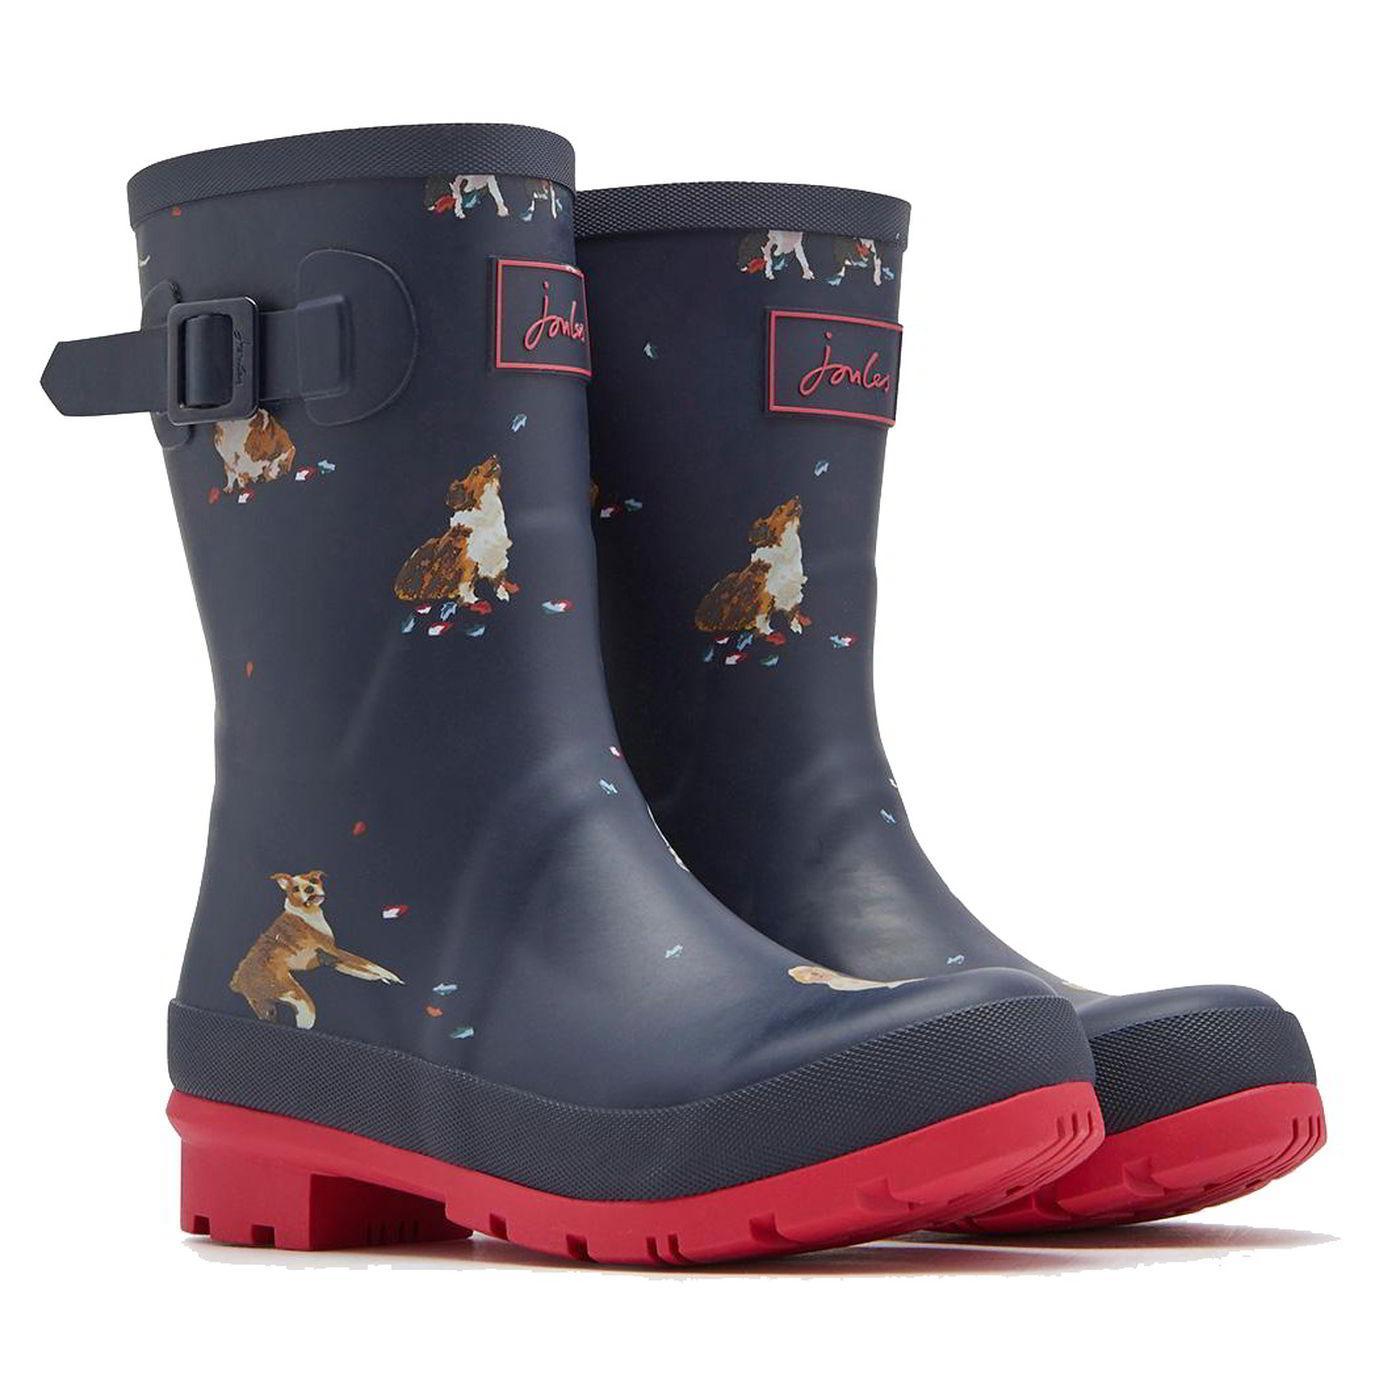 wellies short rain boots